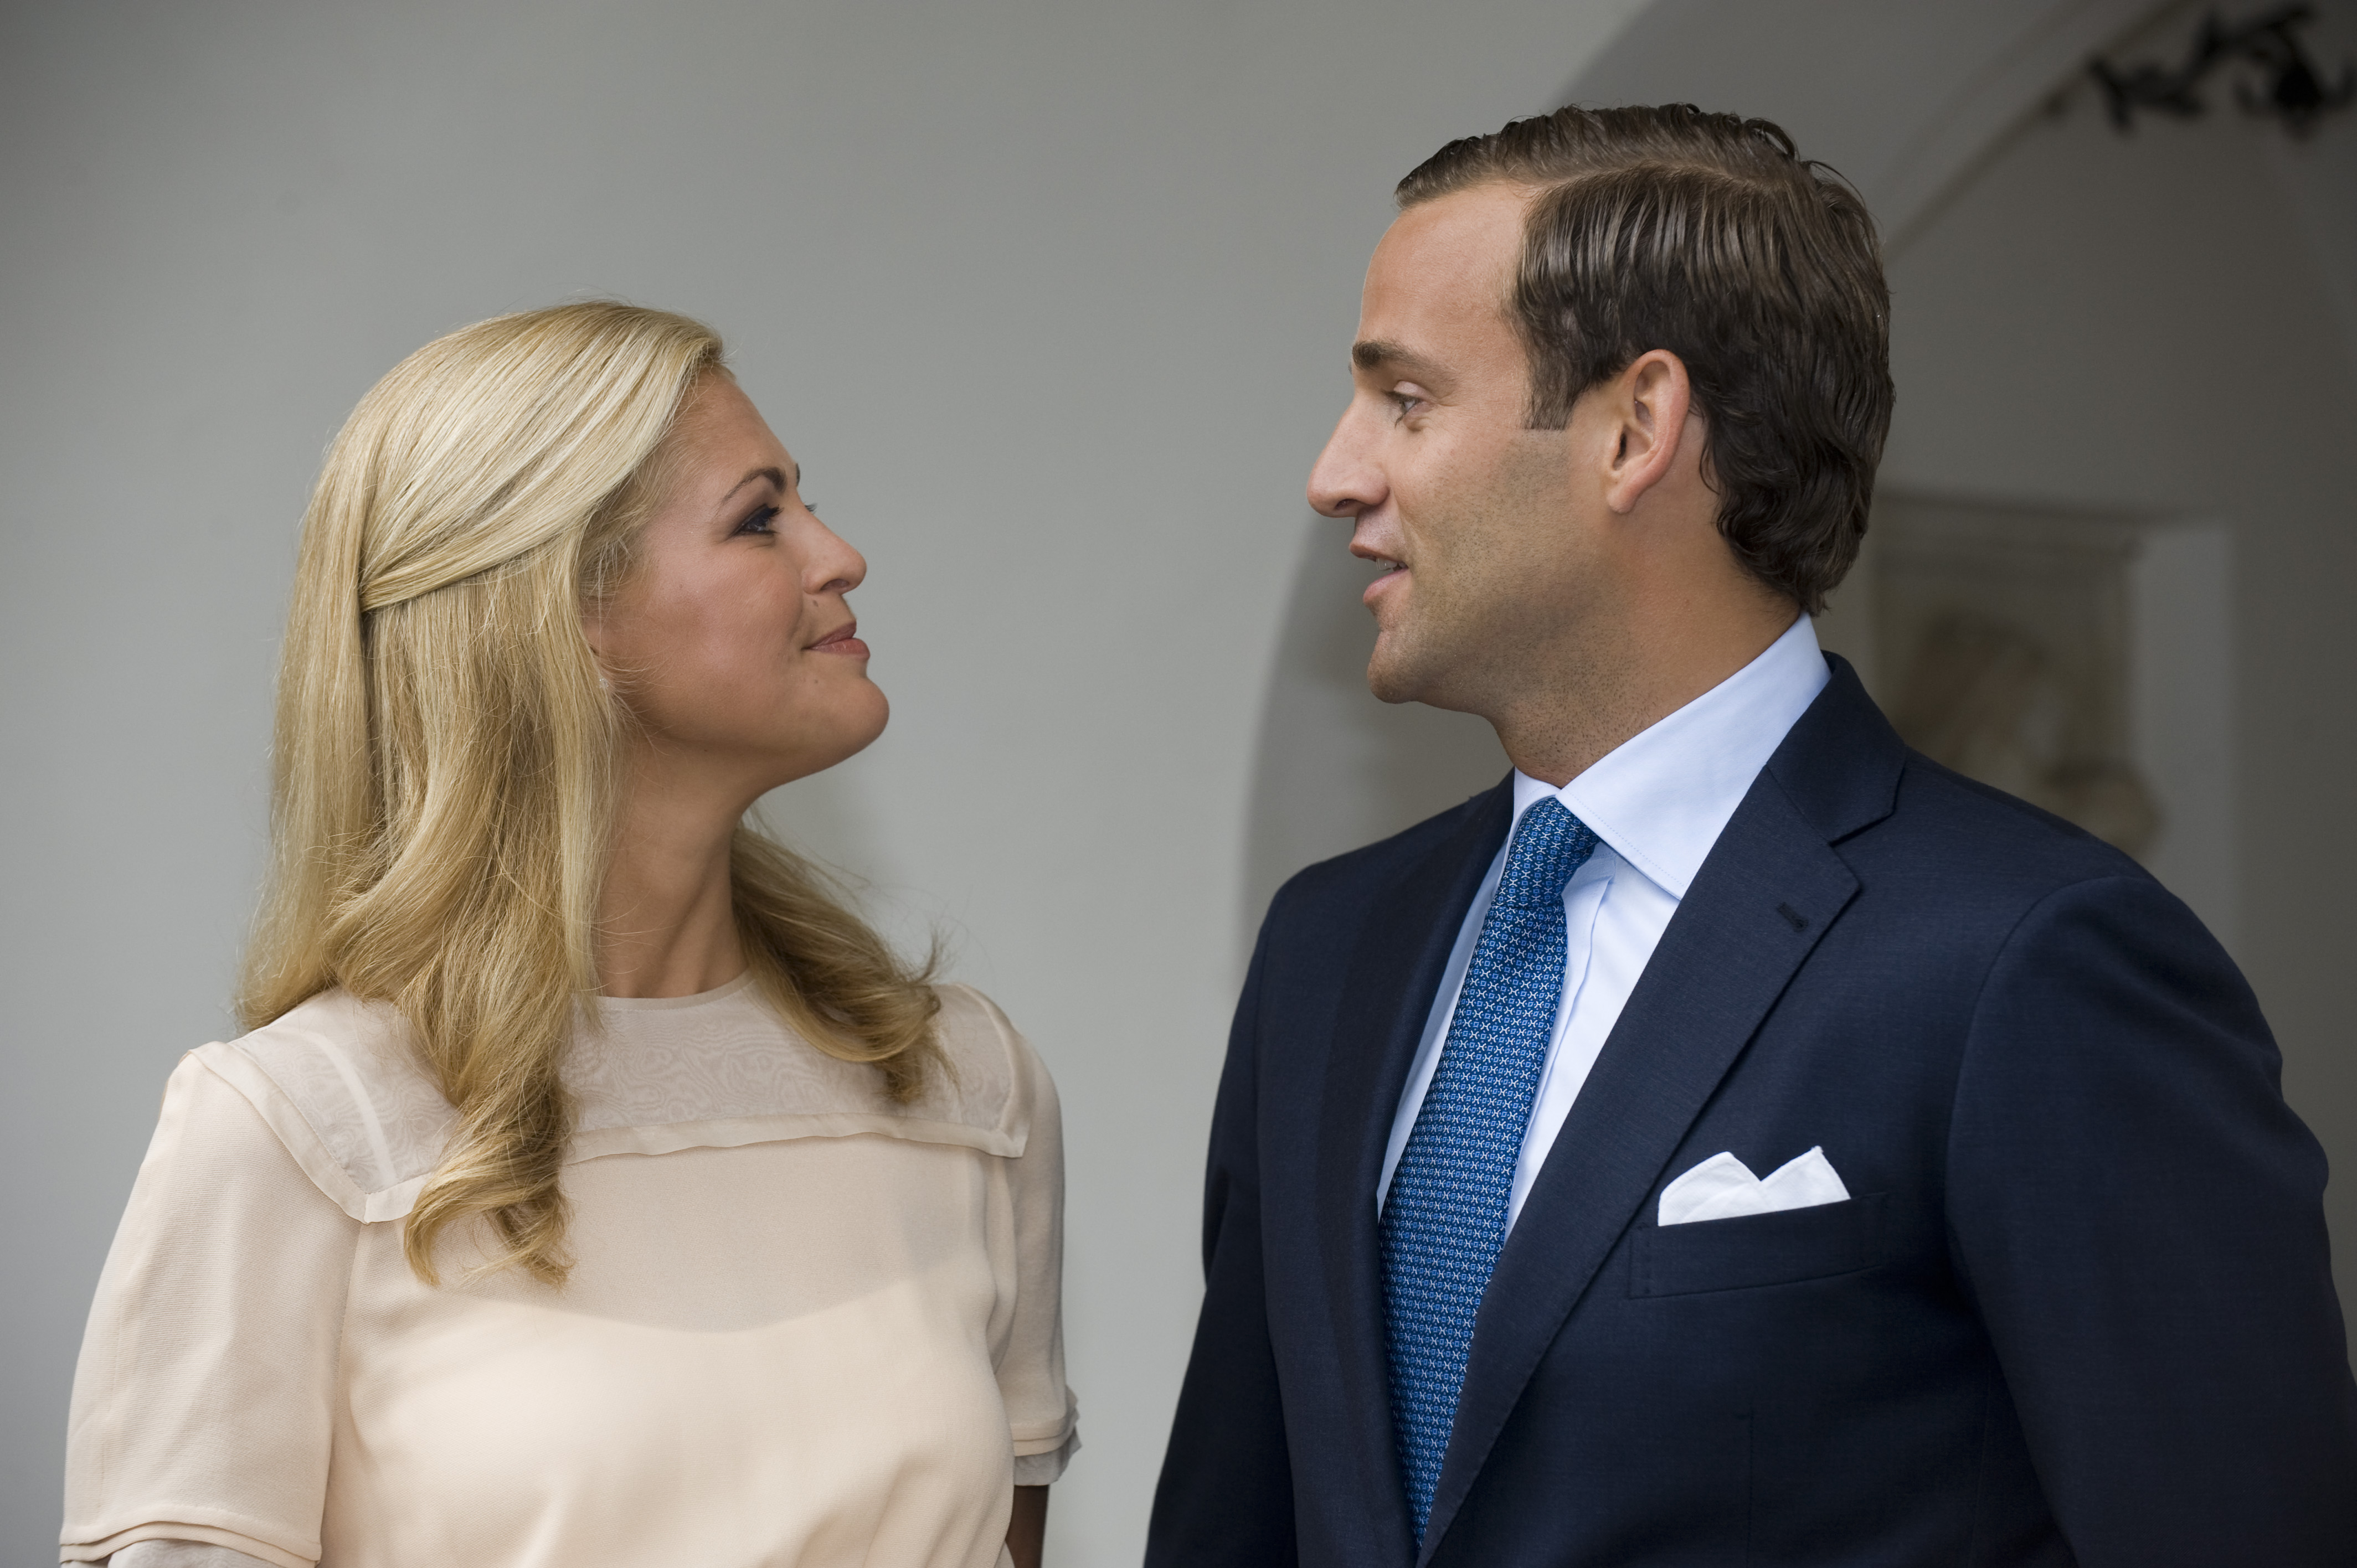 24/4/2010. Prinsessan Madeleine bryter förlovningen med Jonas Bergström efter att det uppdagats av fästmannen varit otrogen. Förlovningen höll mindre än ett år. 